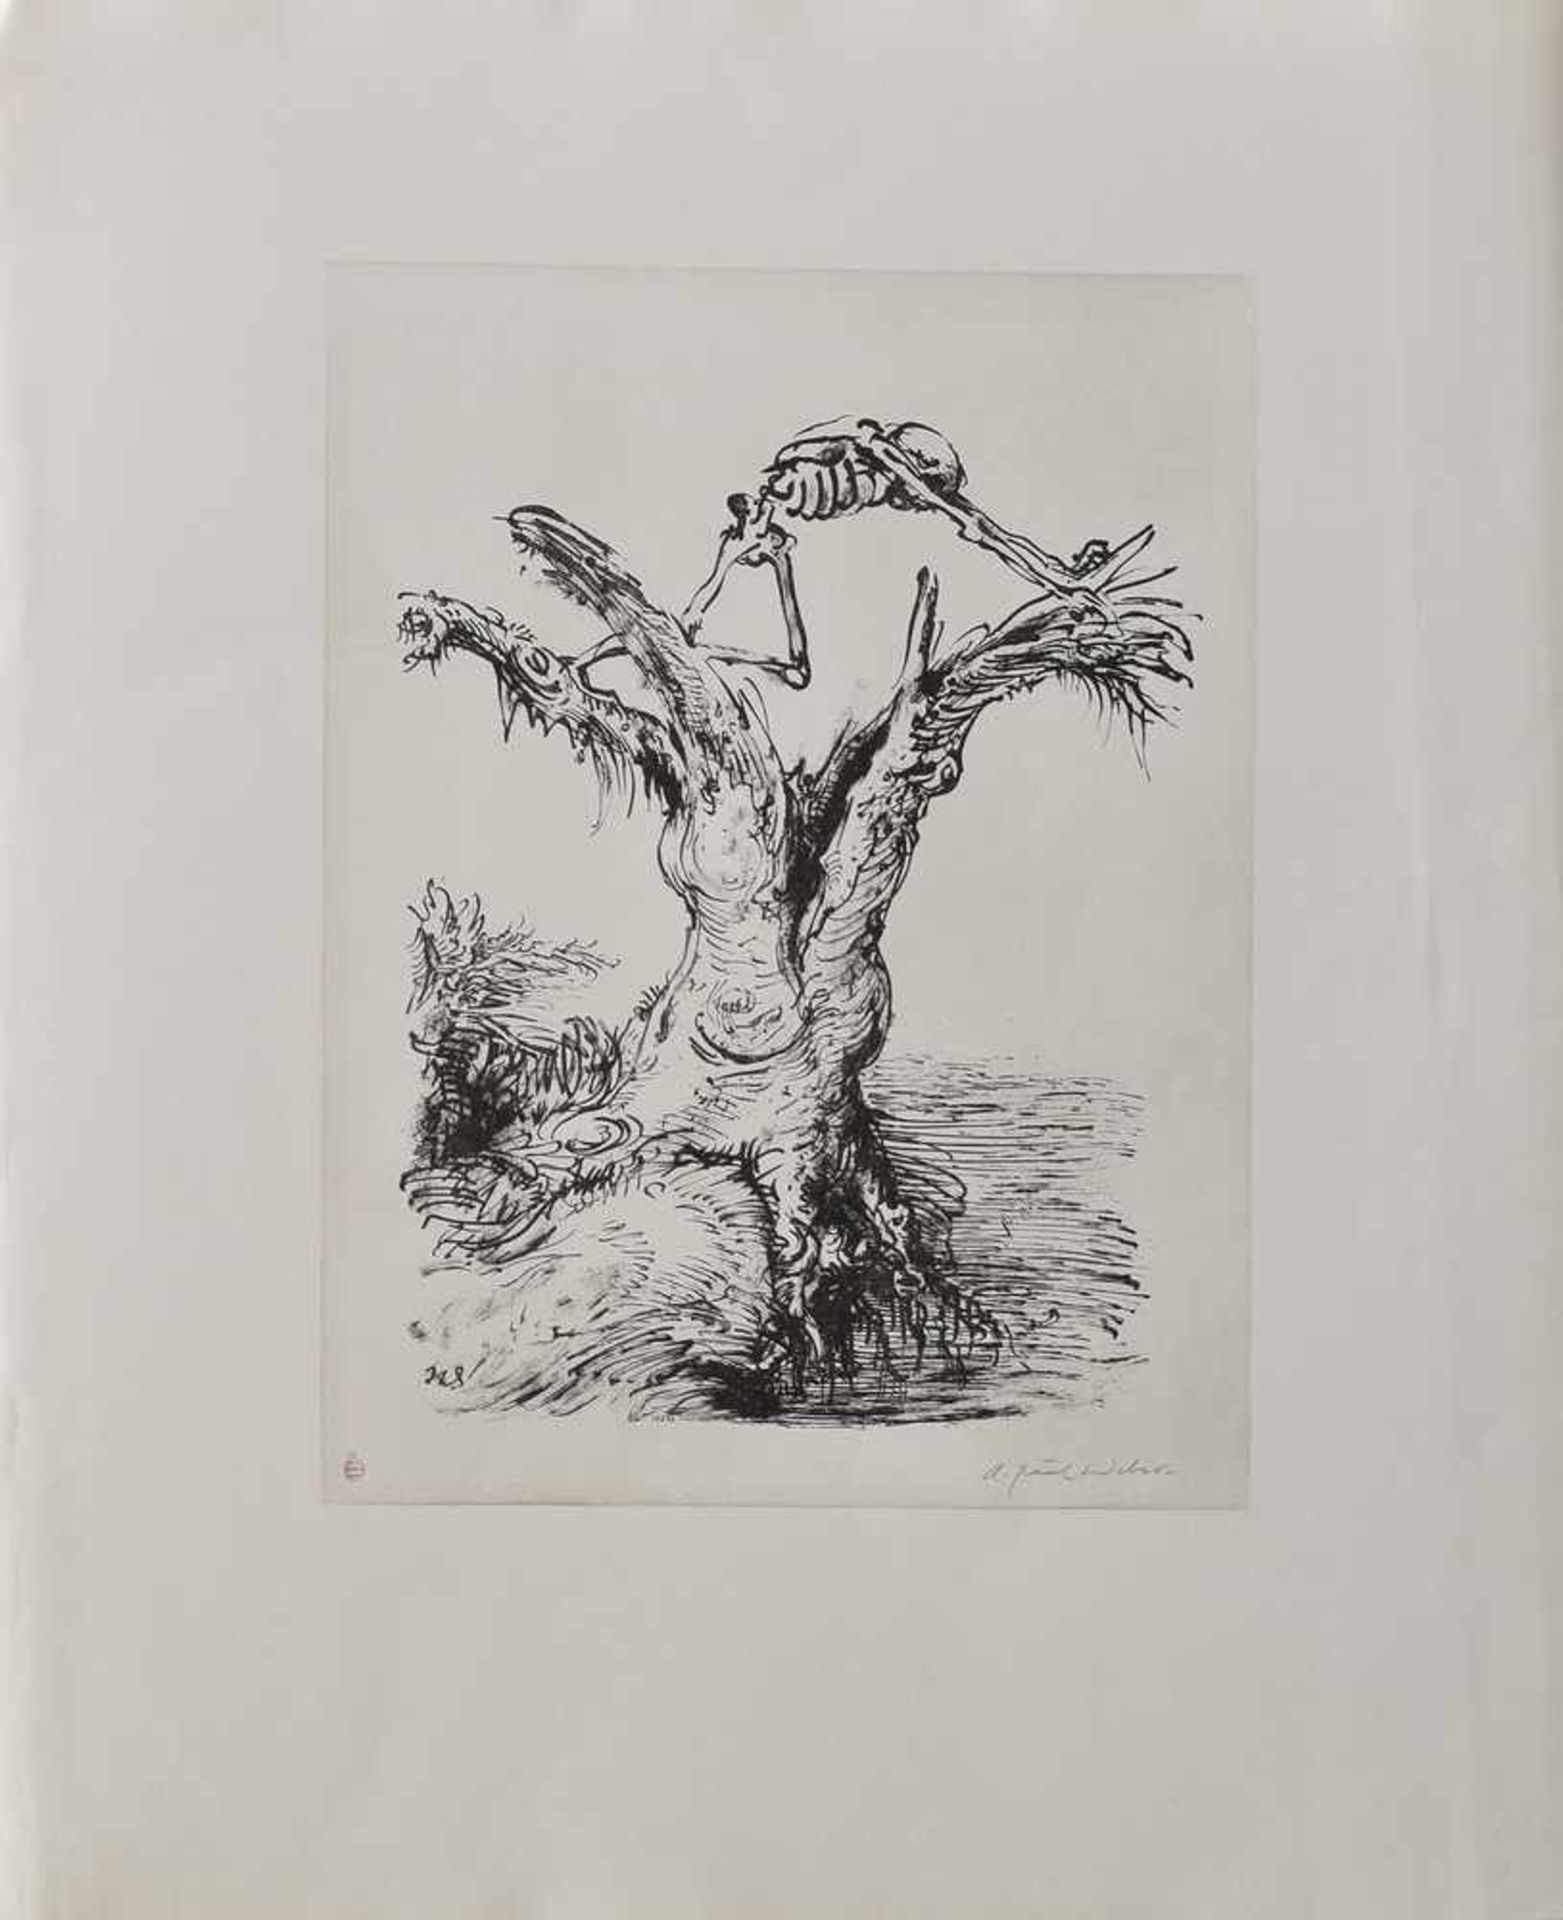 6 Diverse Weber, A. Paul (1893-1980) "Menschendarstellungen", Griffelkunst, u.r.sign., 66x54cm, - Image 6 of 7